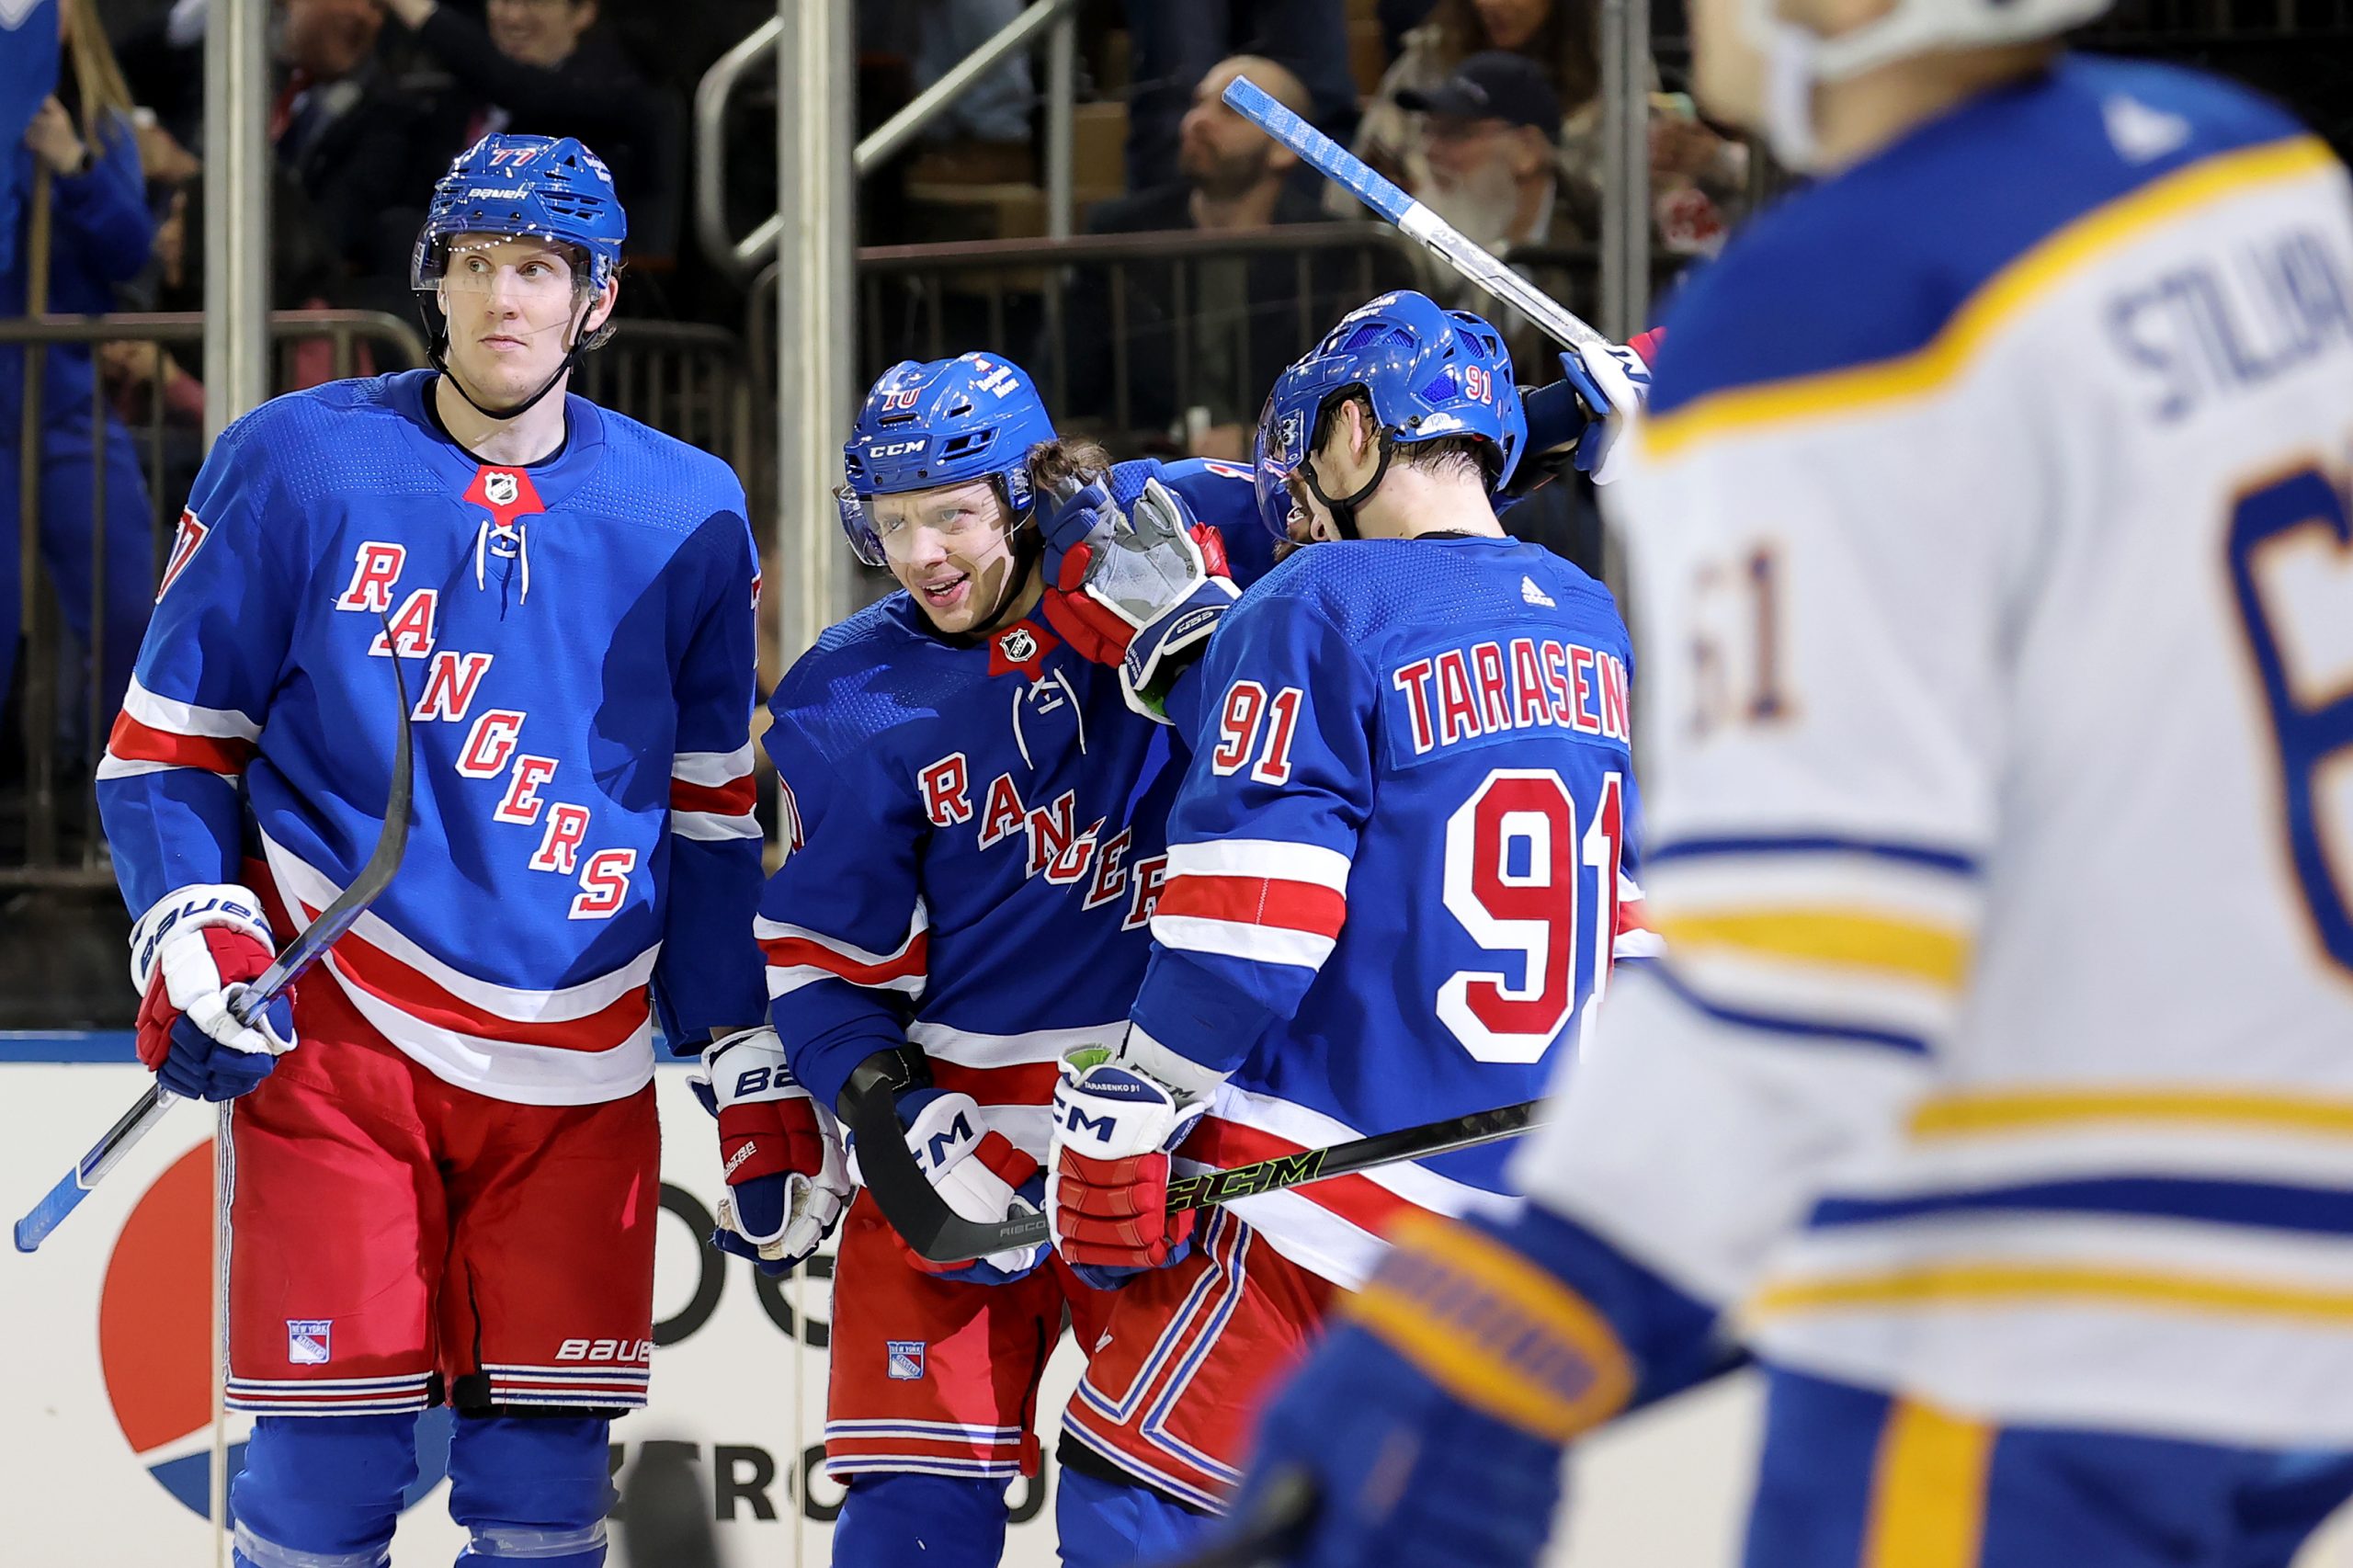 New York Rangers D Ryan Lindgren scores first career NHL goal (Video)